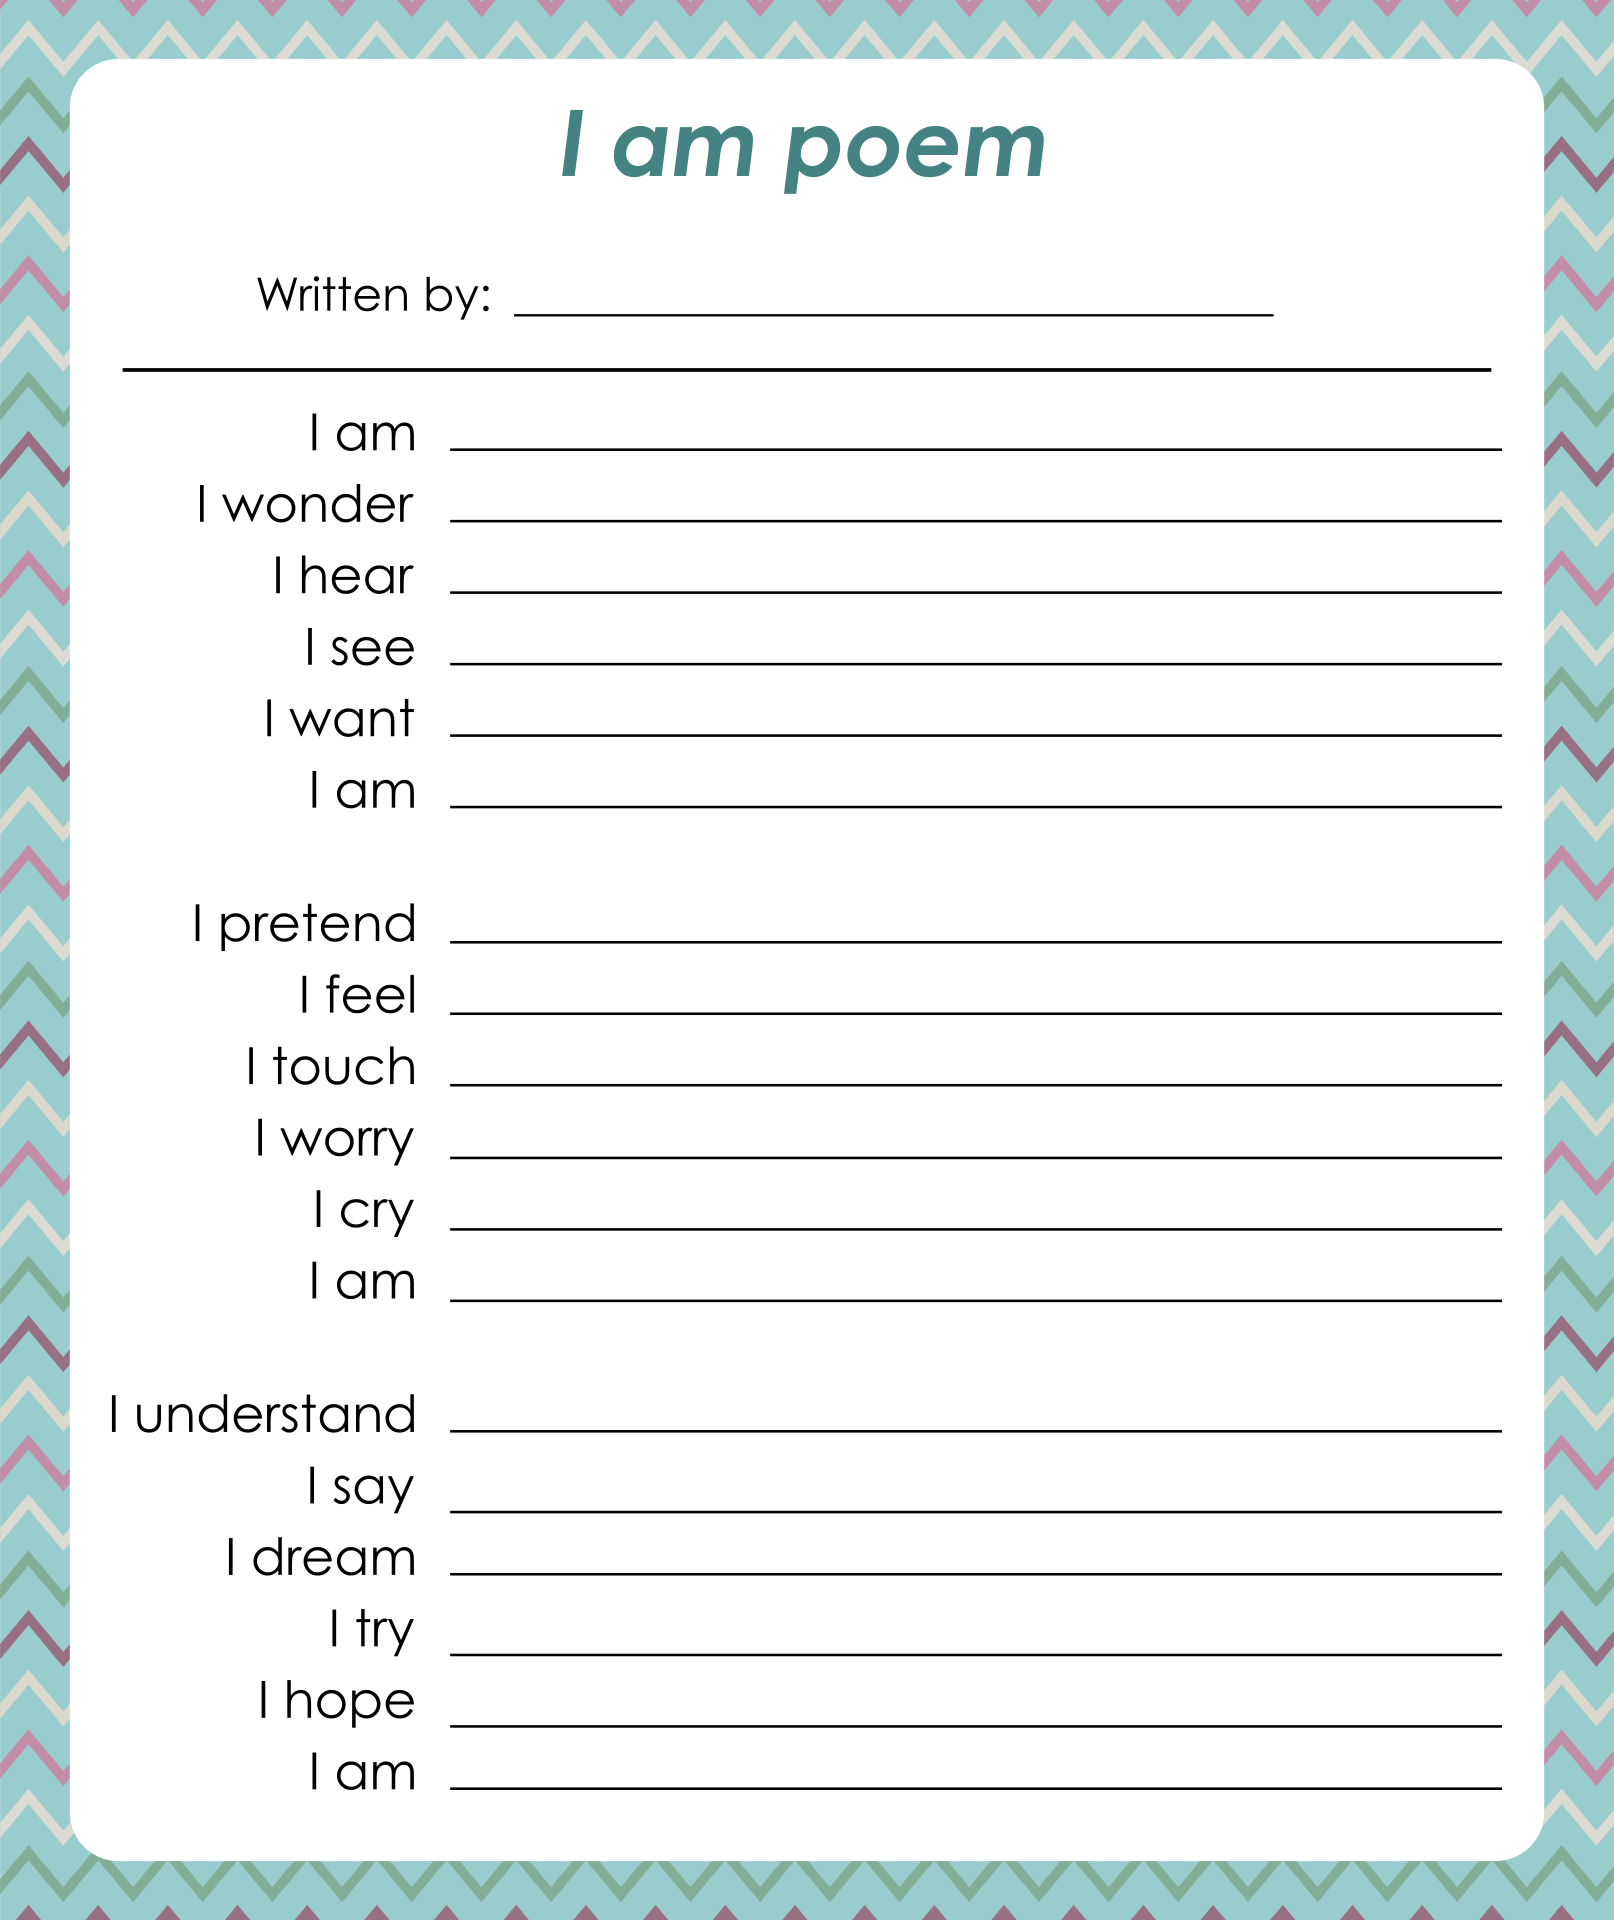 8 Best Images of I AM Poem Printable I AM Poem Template Printable